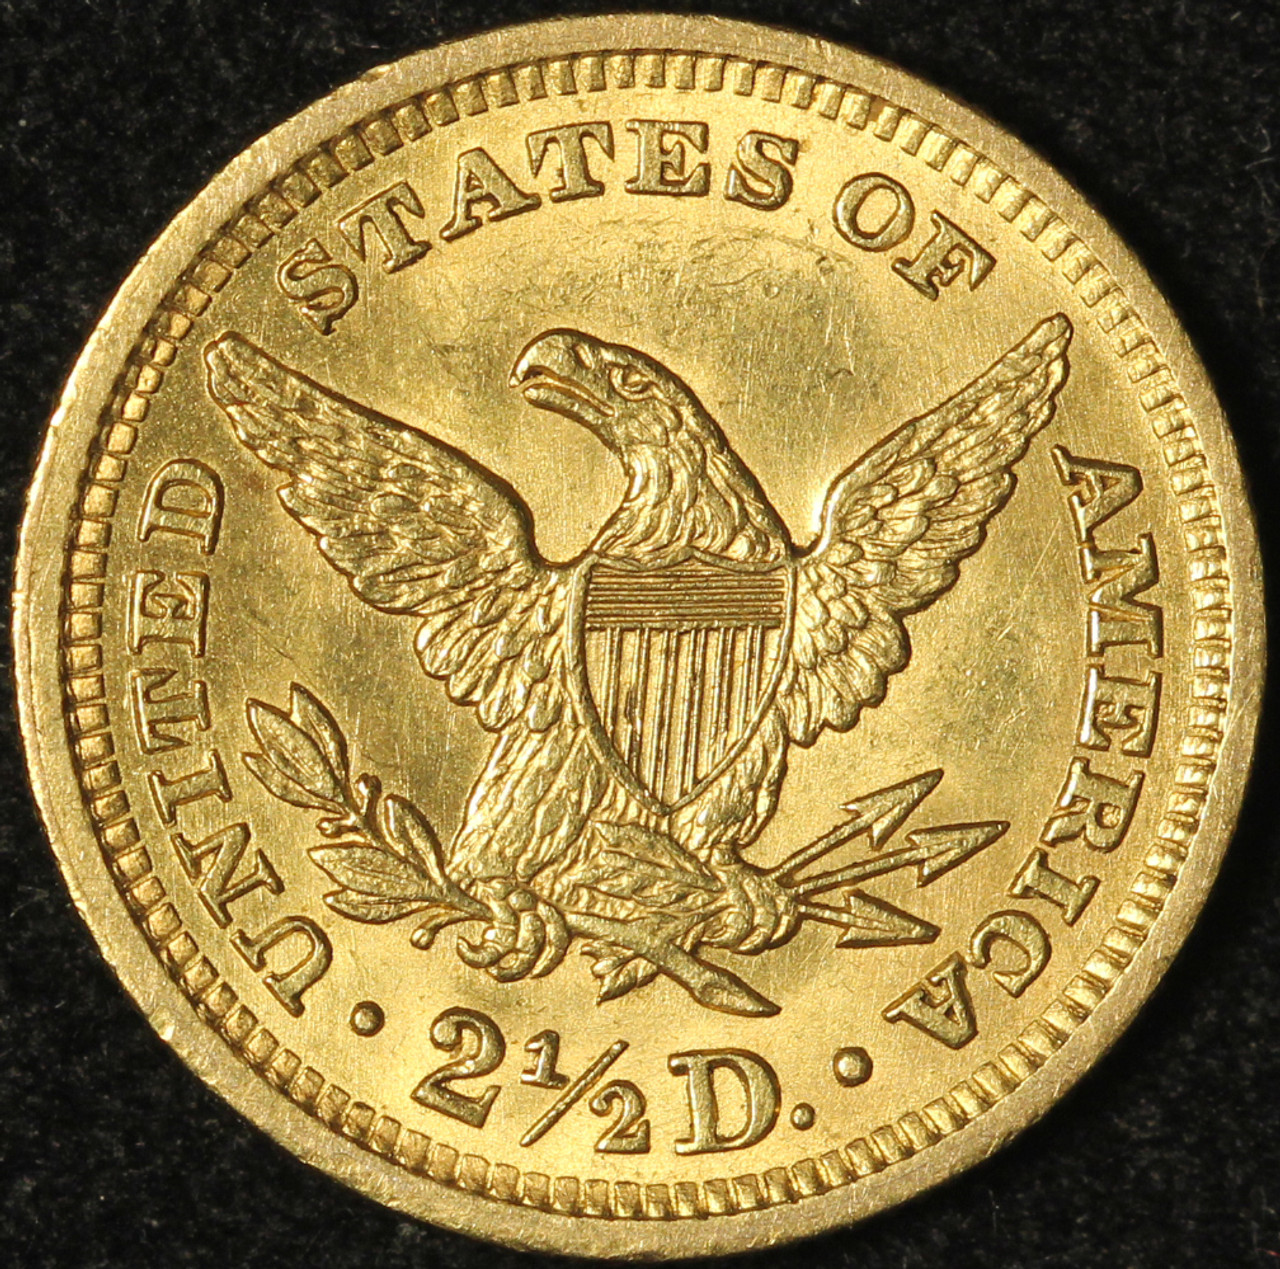 $2.50 U.S. Liberty Gold Quarter Eagles